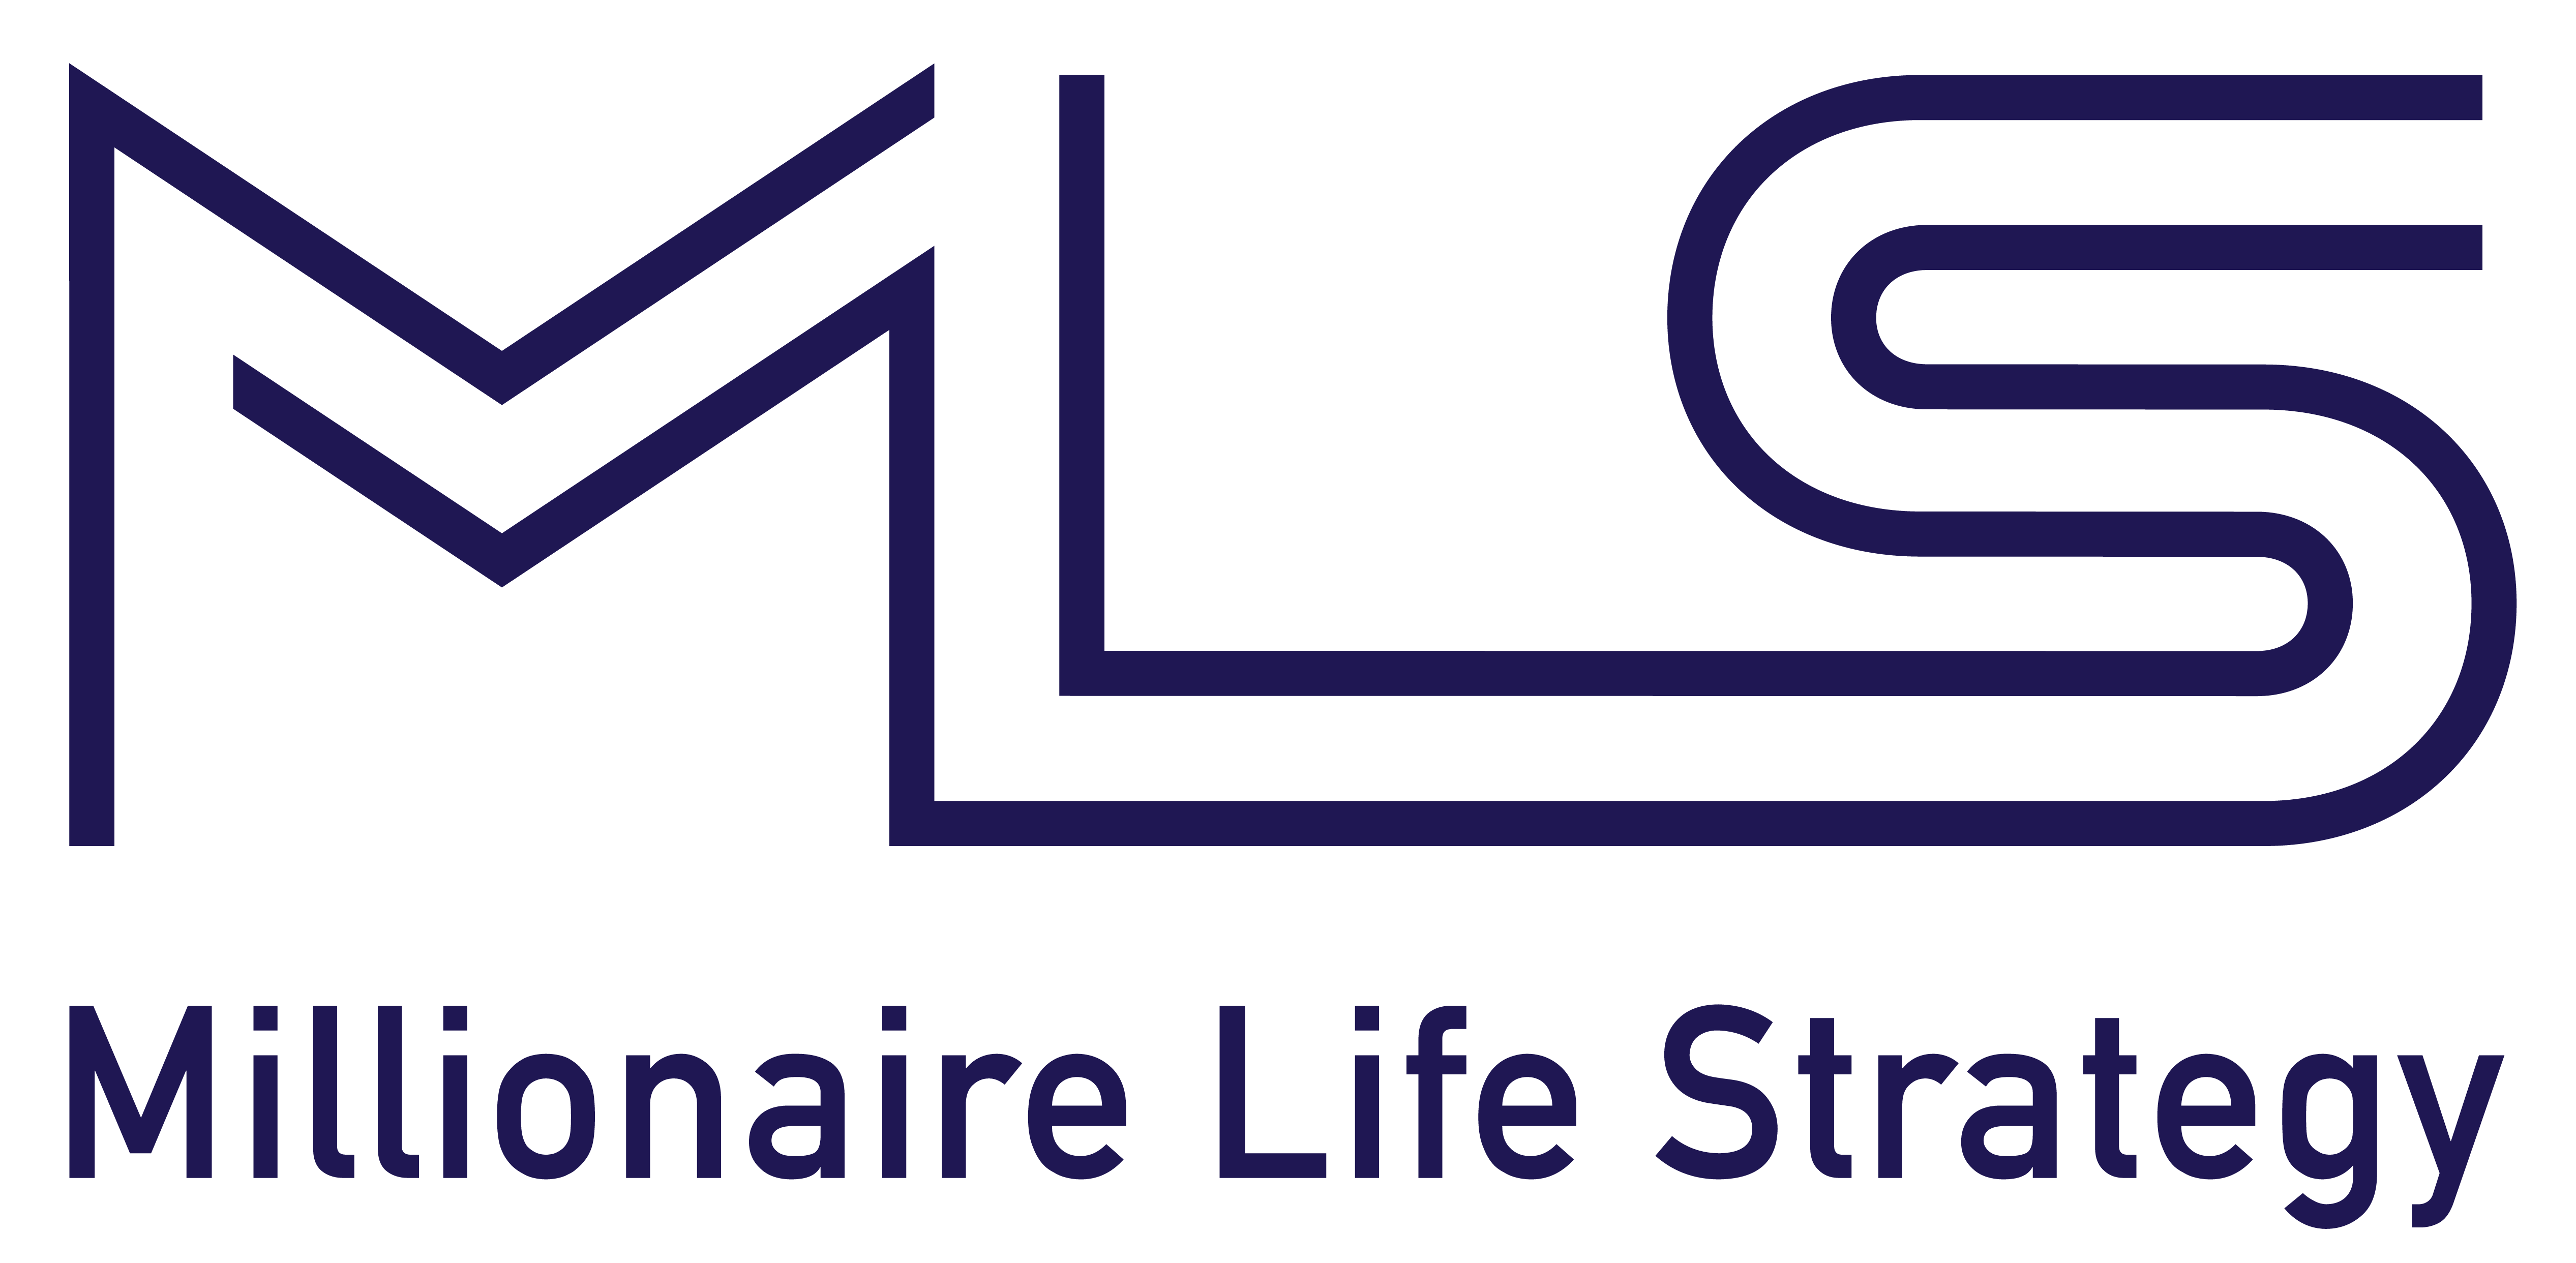 Millionaire Life Strategy logo large